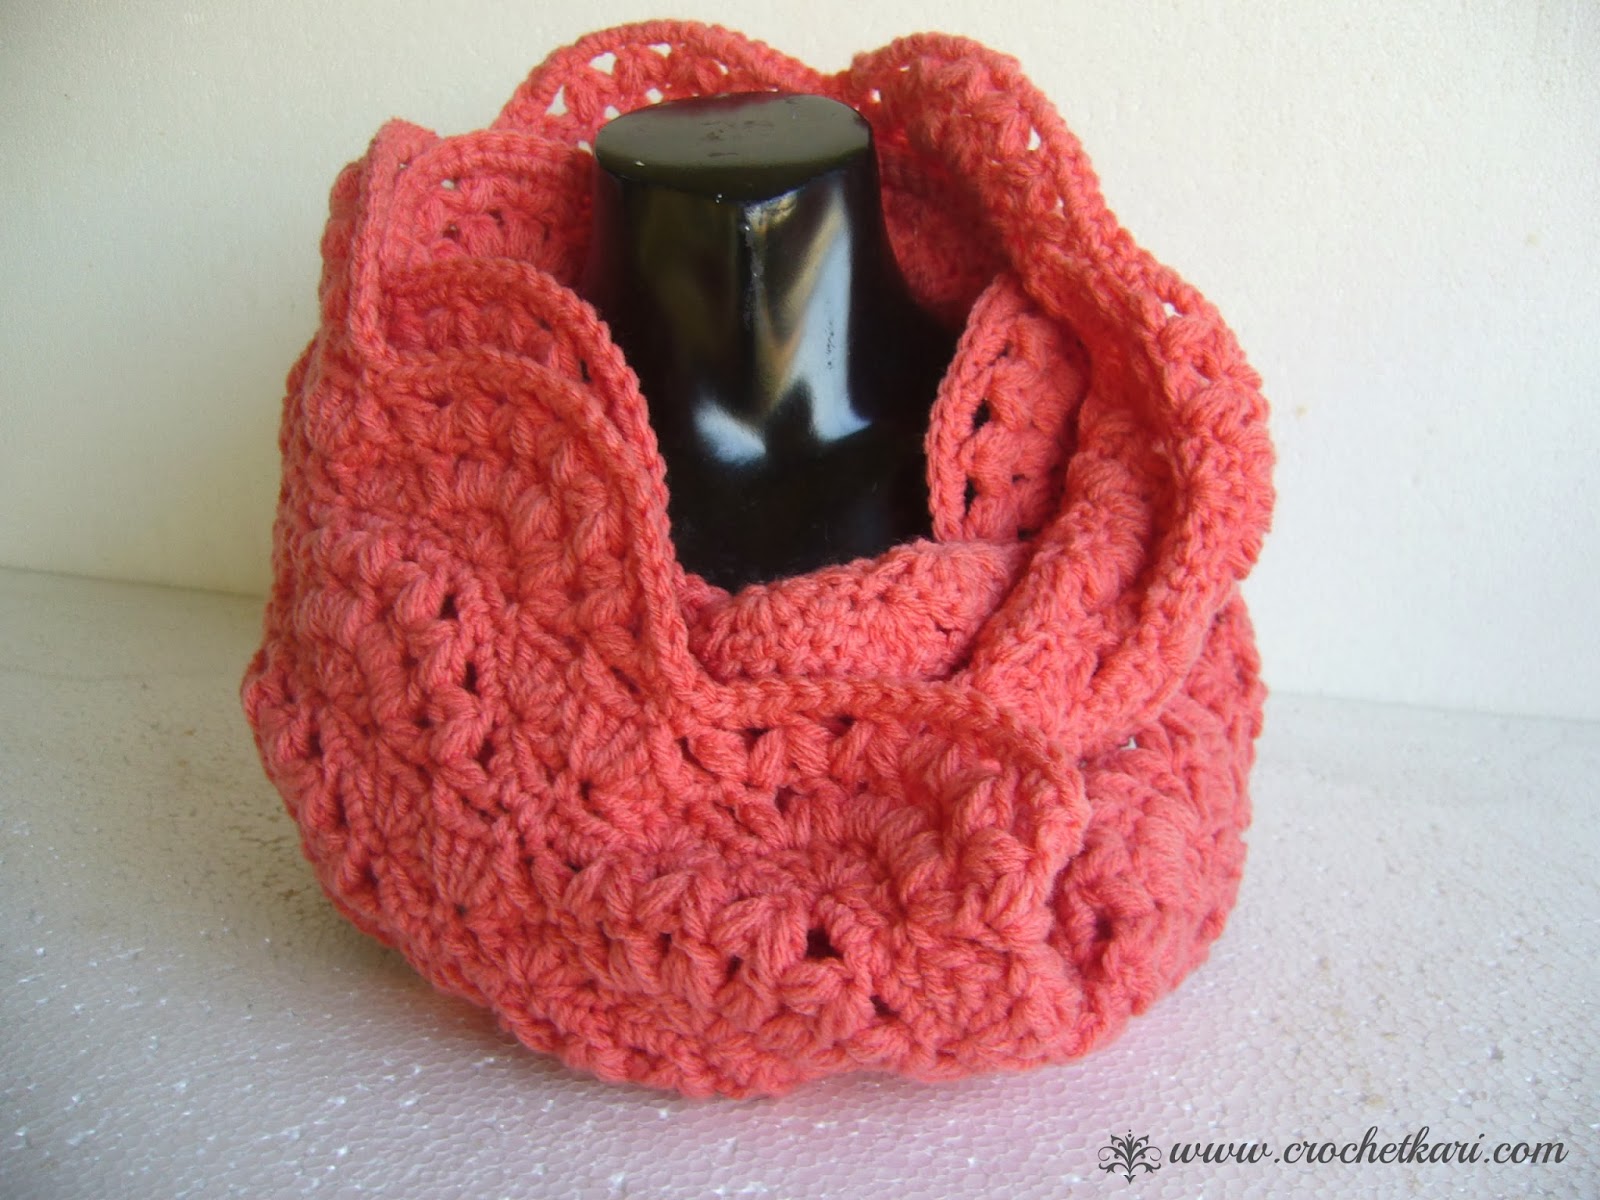 Crochet cowl free pattern